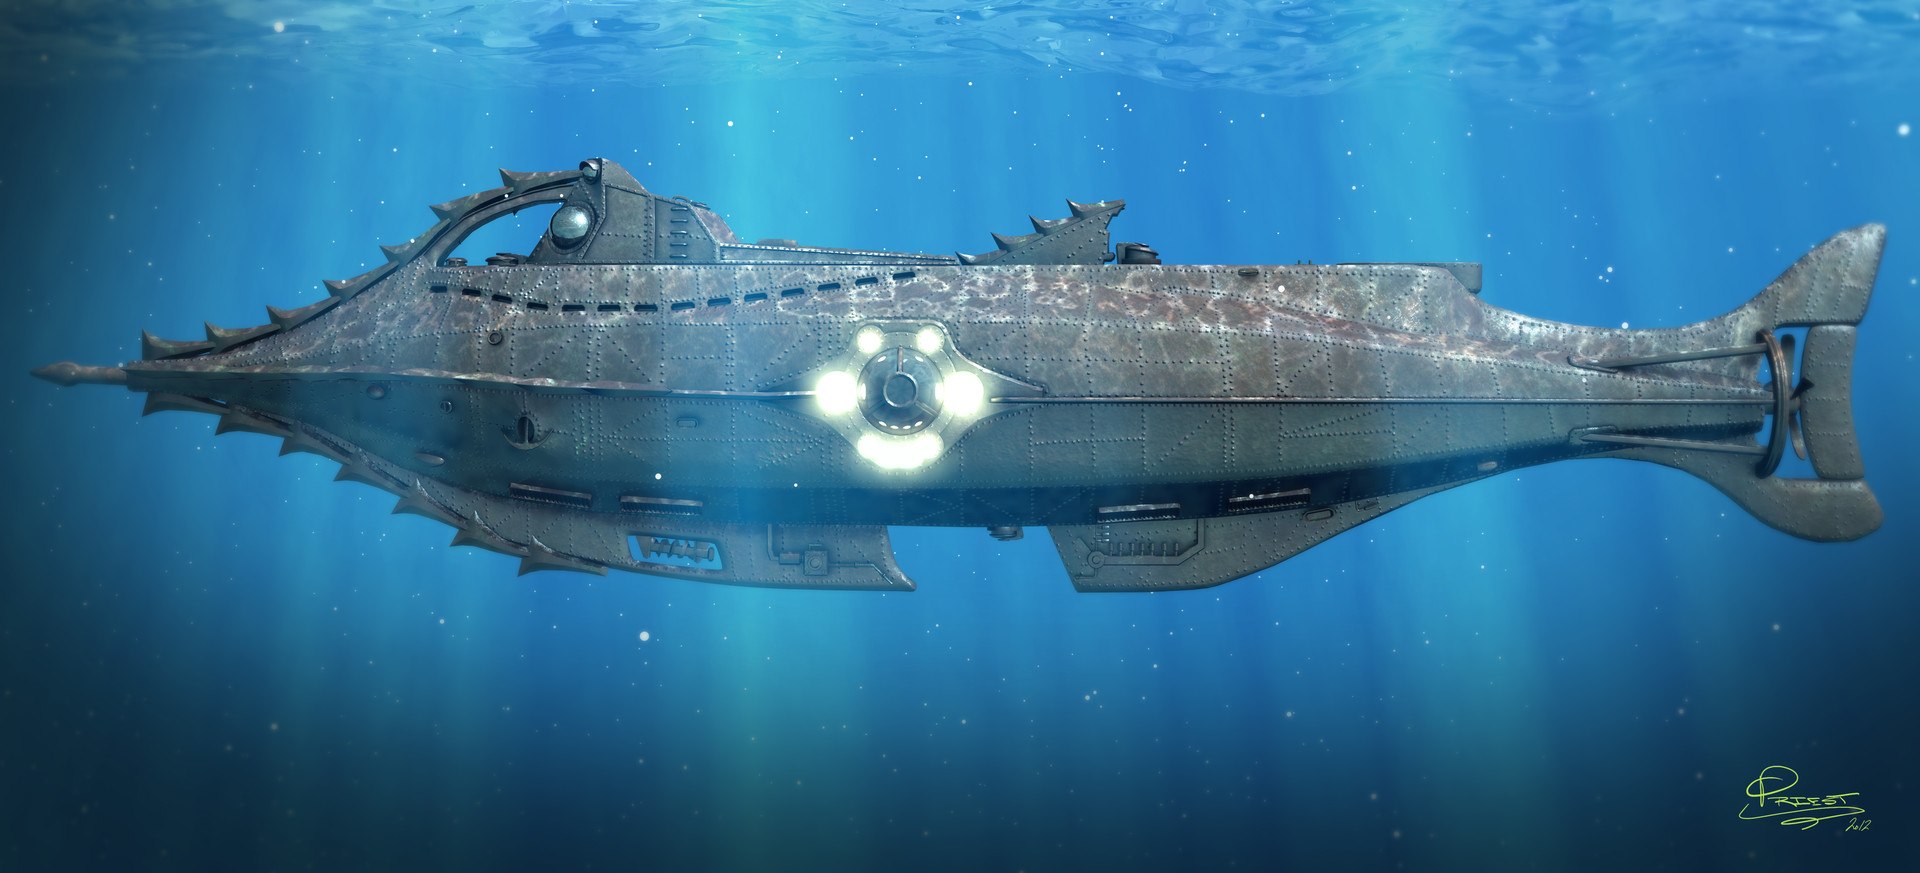 Наутилус фрегат. Подводная лодка капитана Немо. Наутилус судно капитана Немо. Жюль Верн Наутилус подводная лодка. Подводная лодка Капитан Энема.